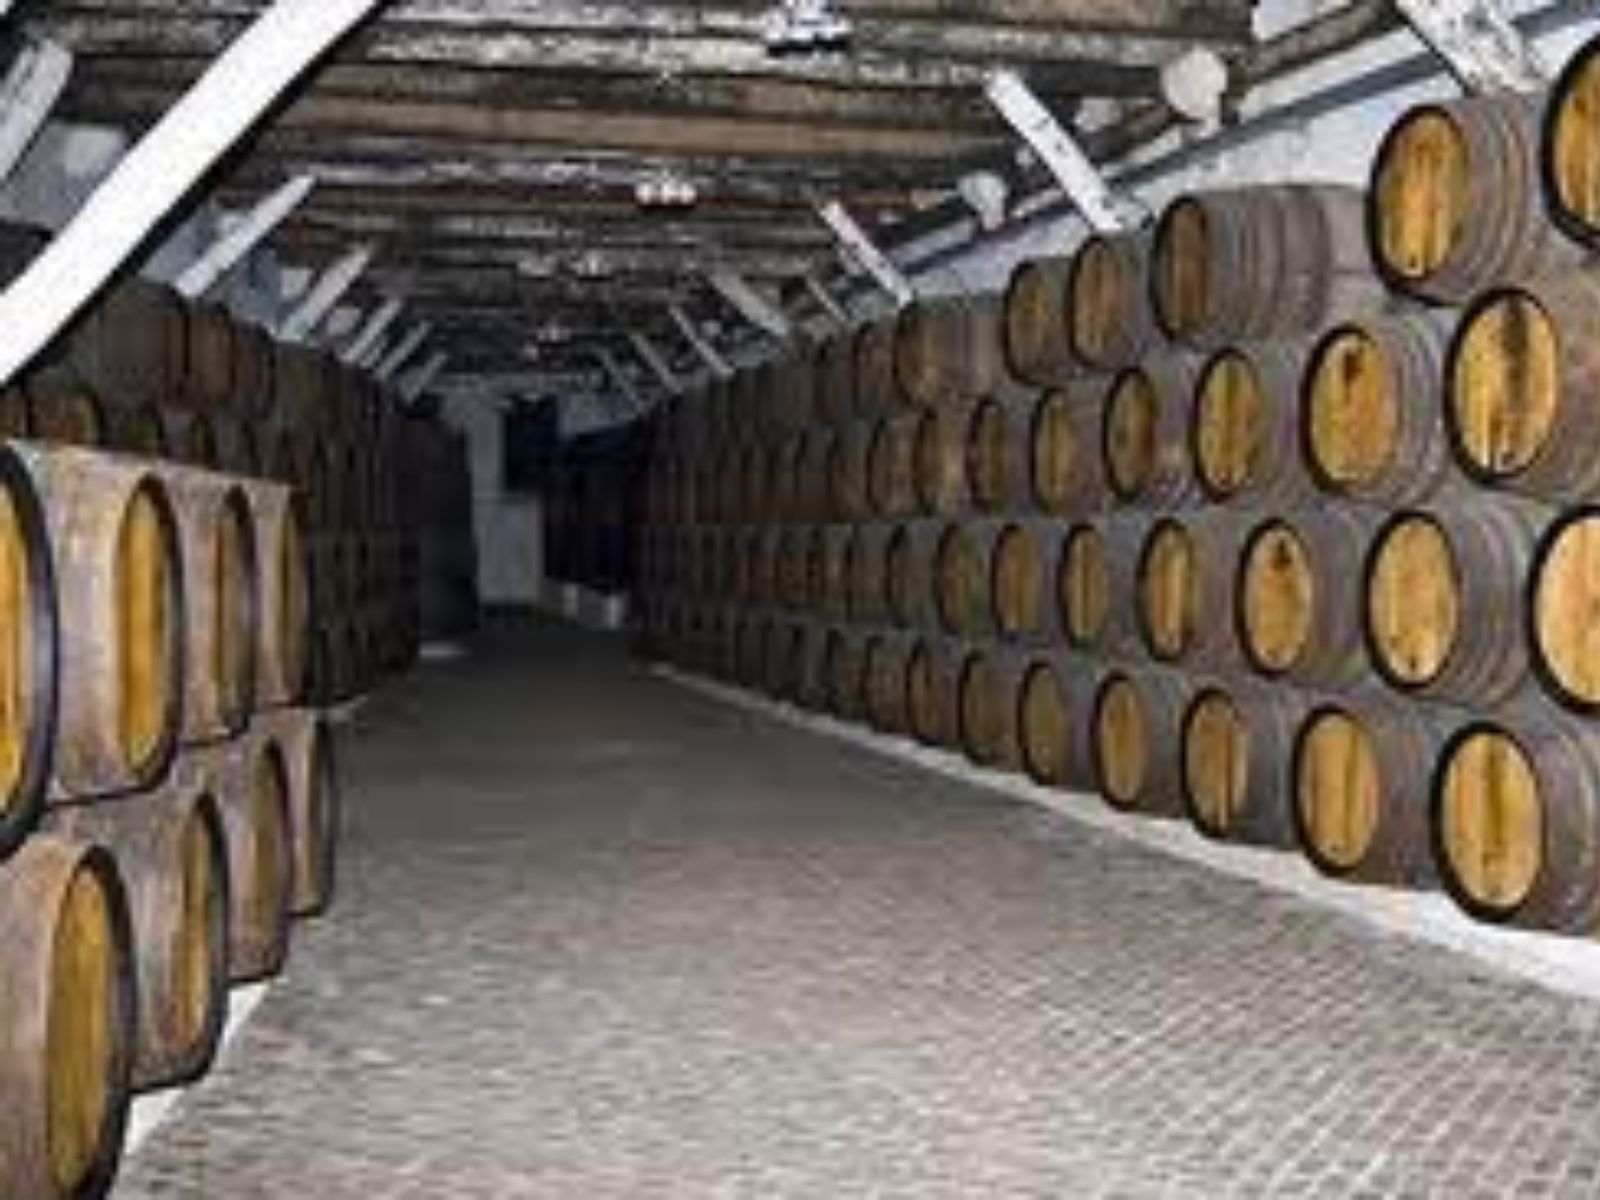  Подвалы известных производителей вина